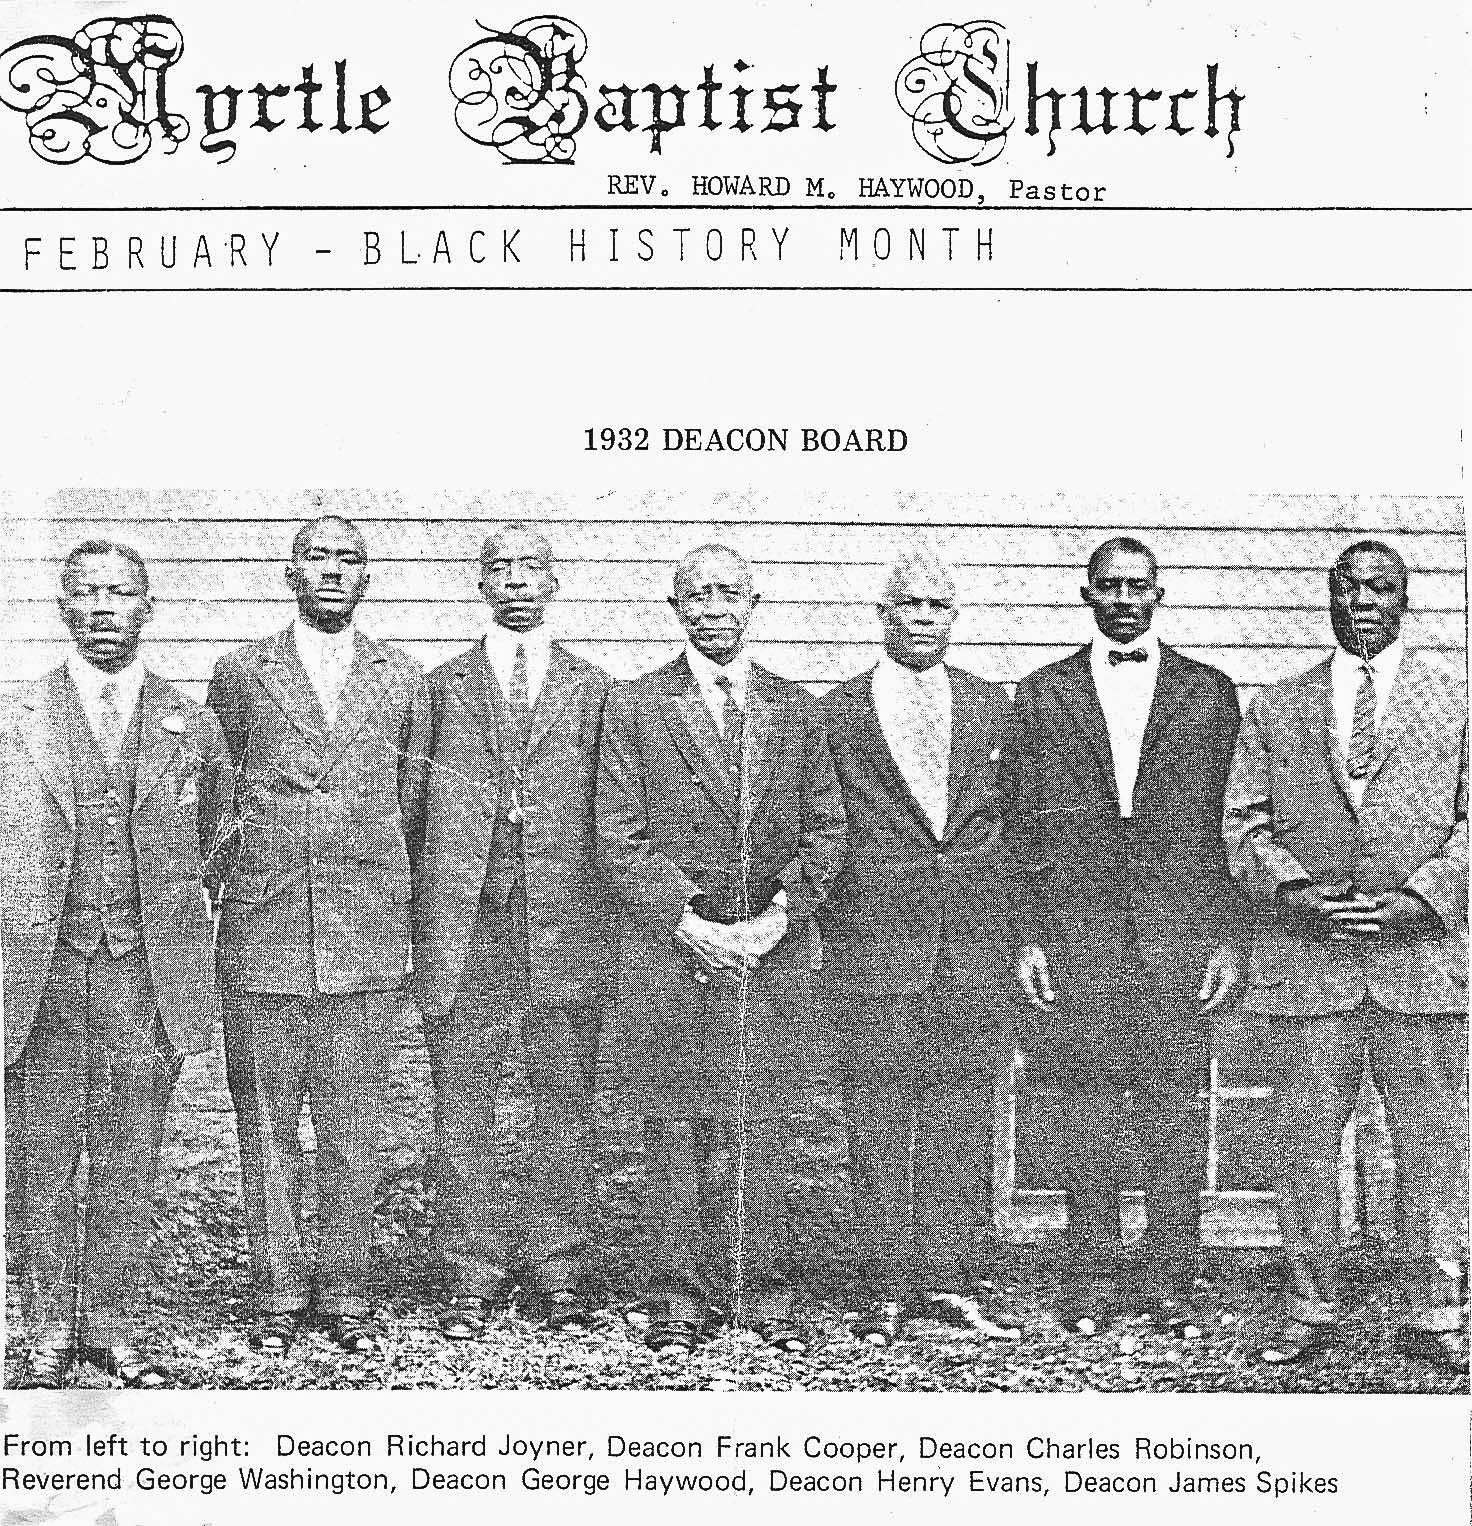 Myrtle Baptist 1932 Deacon Board